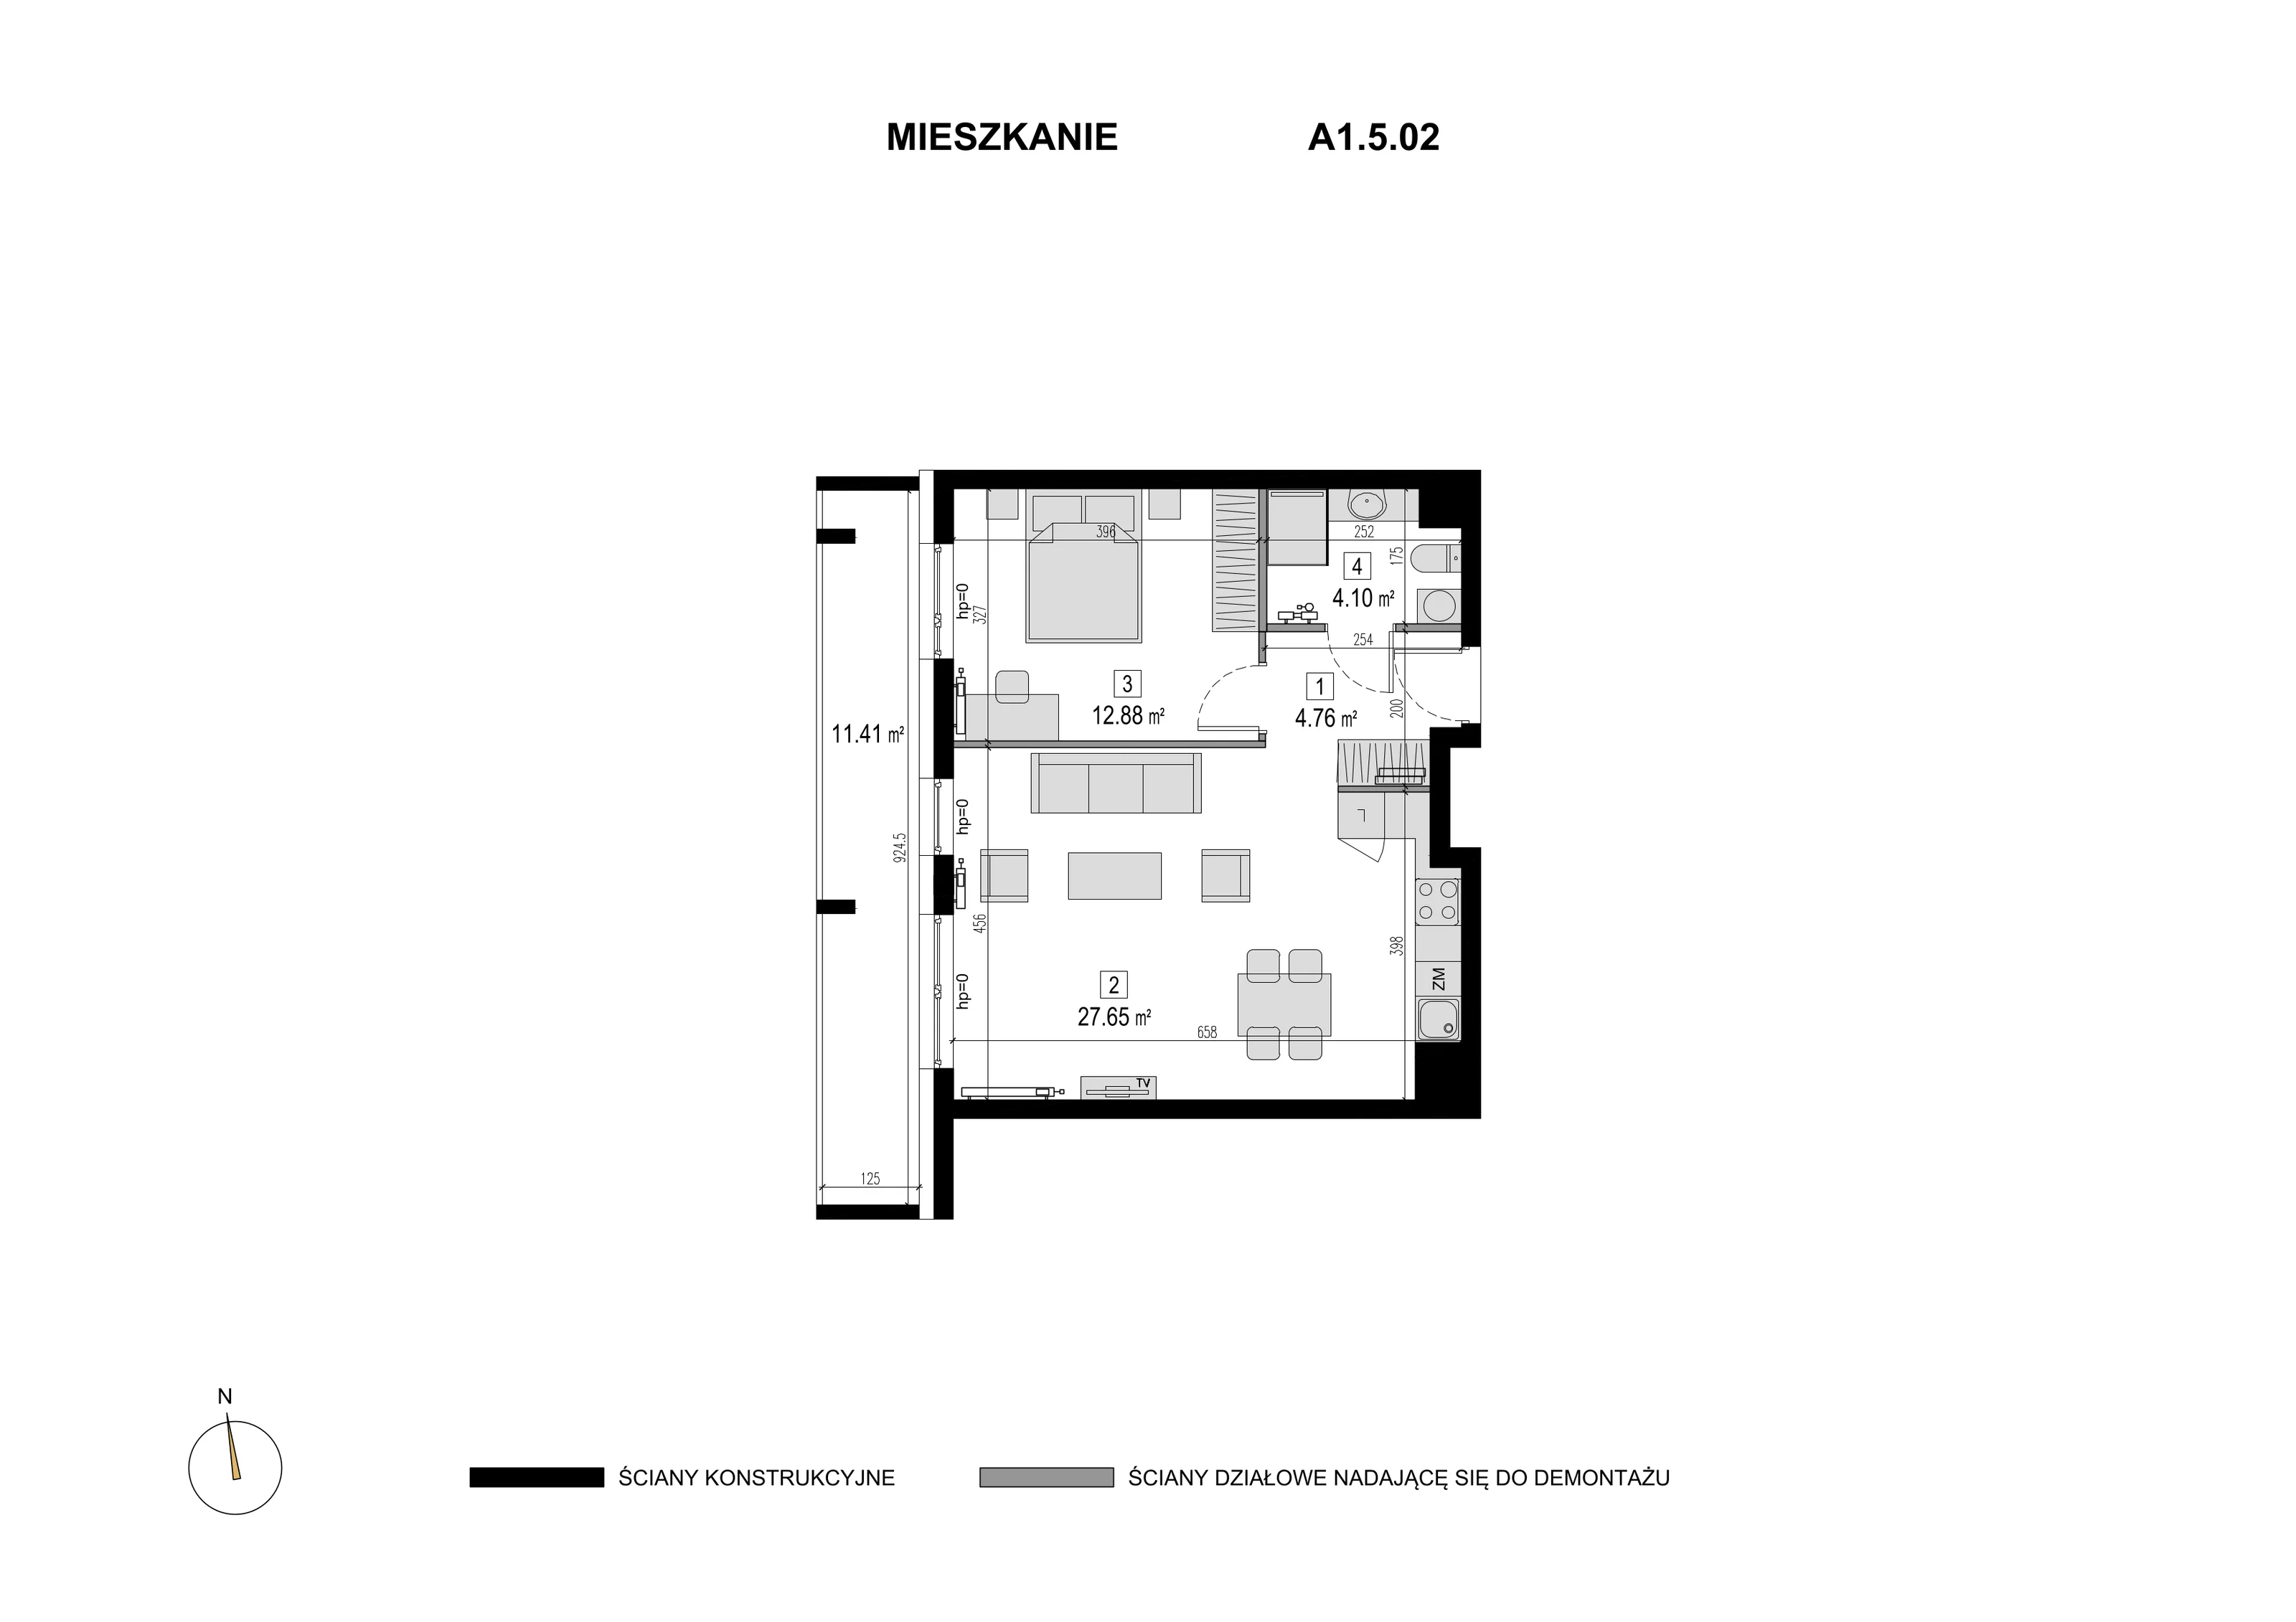 Mieszkanie 49,39 m², piętro 4, oferta nr A1.5.02, Novaforma, Legnica, ul. Chojnowska